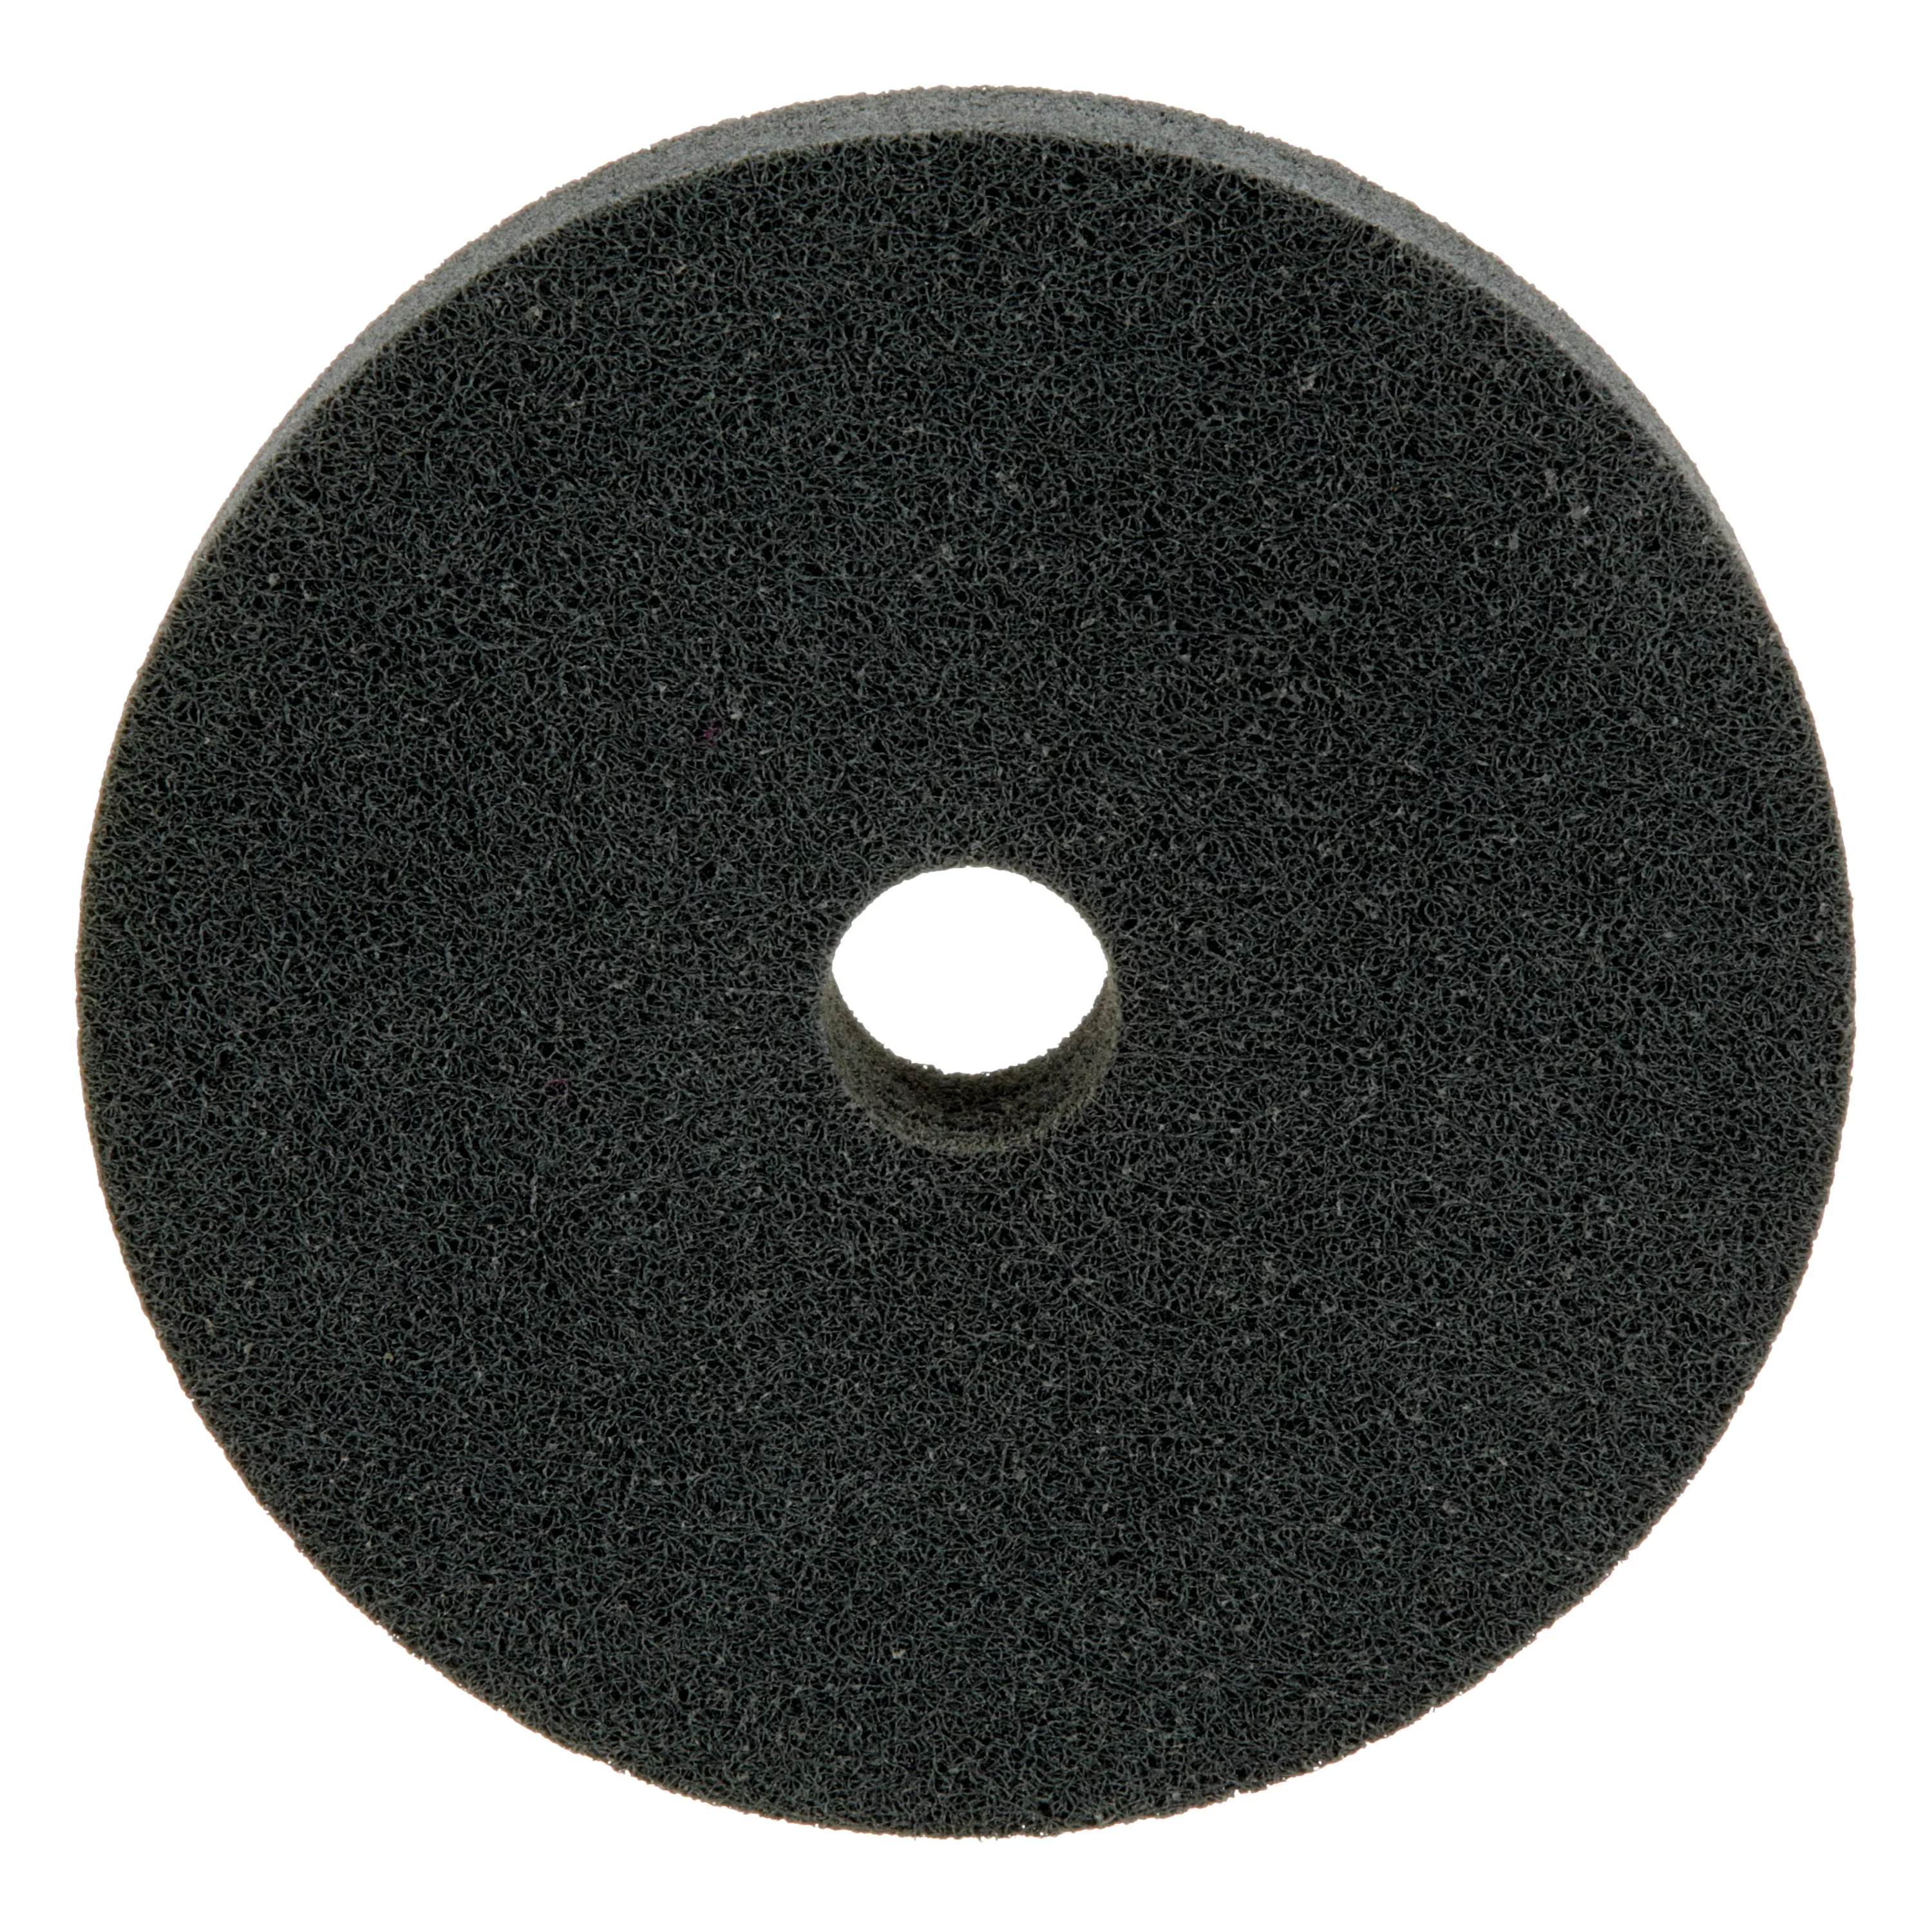 Standard Abrasives™ S/C Unitized Wheel 853278, 532 6 in x 1 in x 1 in, 3
ea/Case